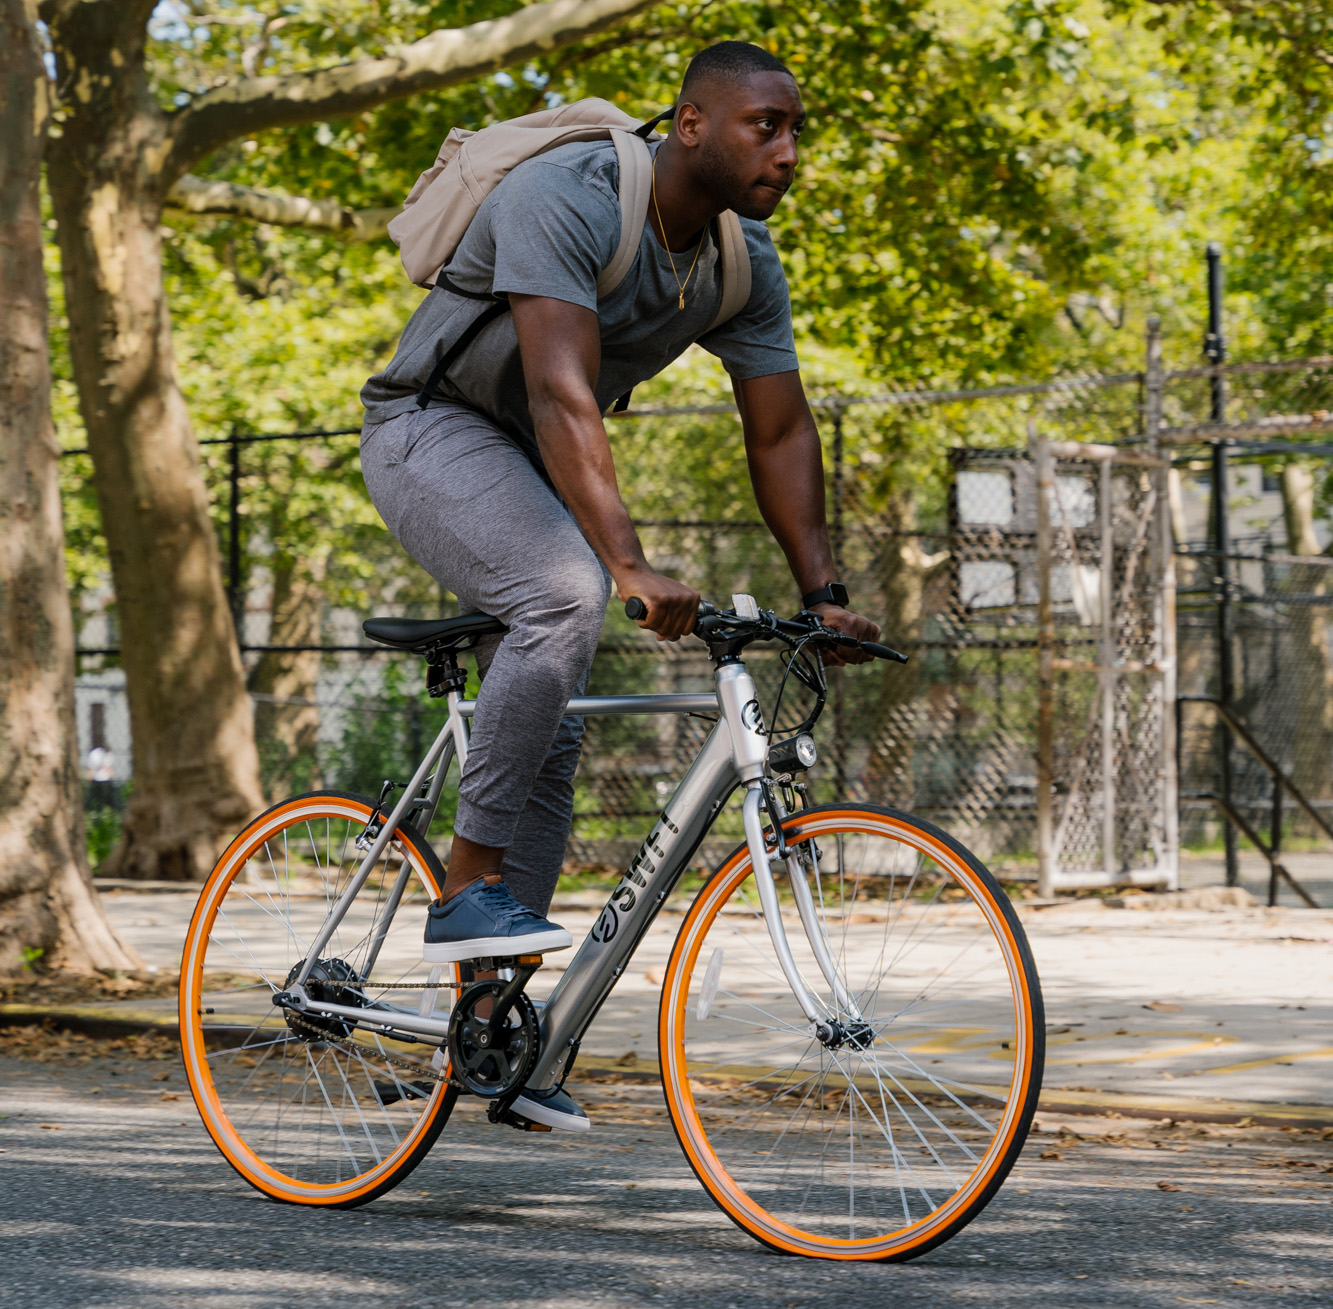 A man riding a Swft electric bike